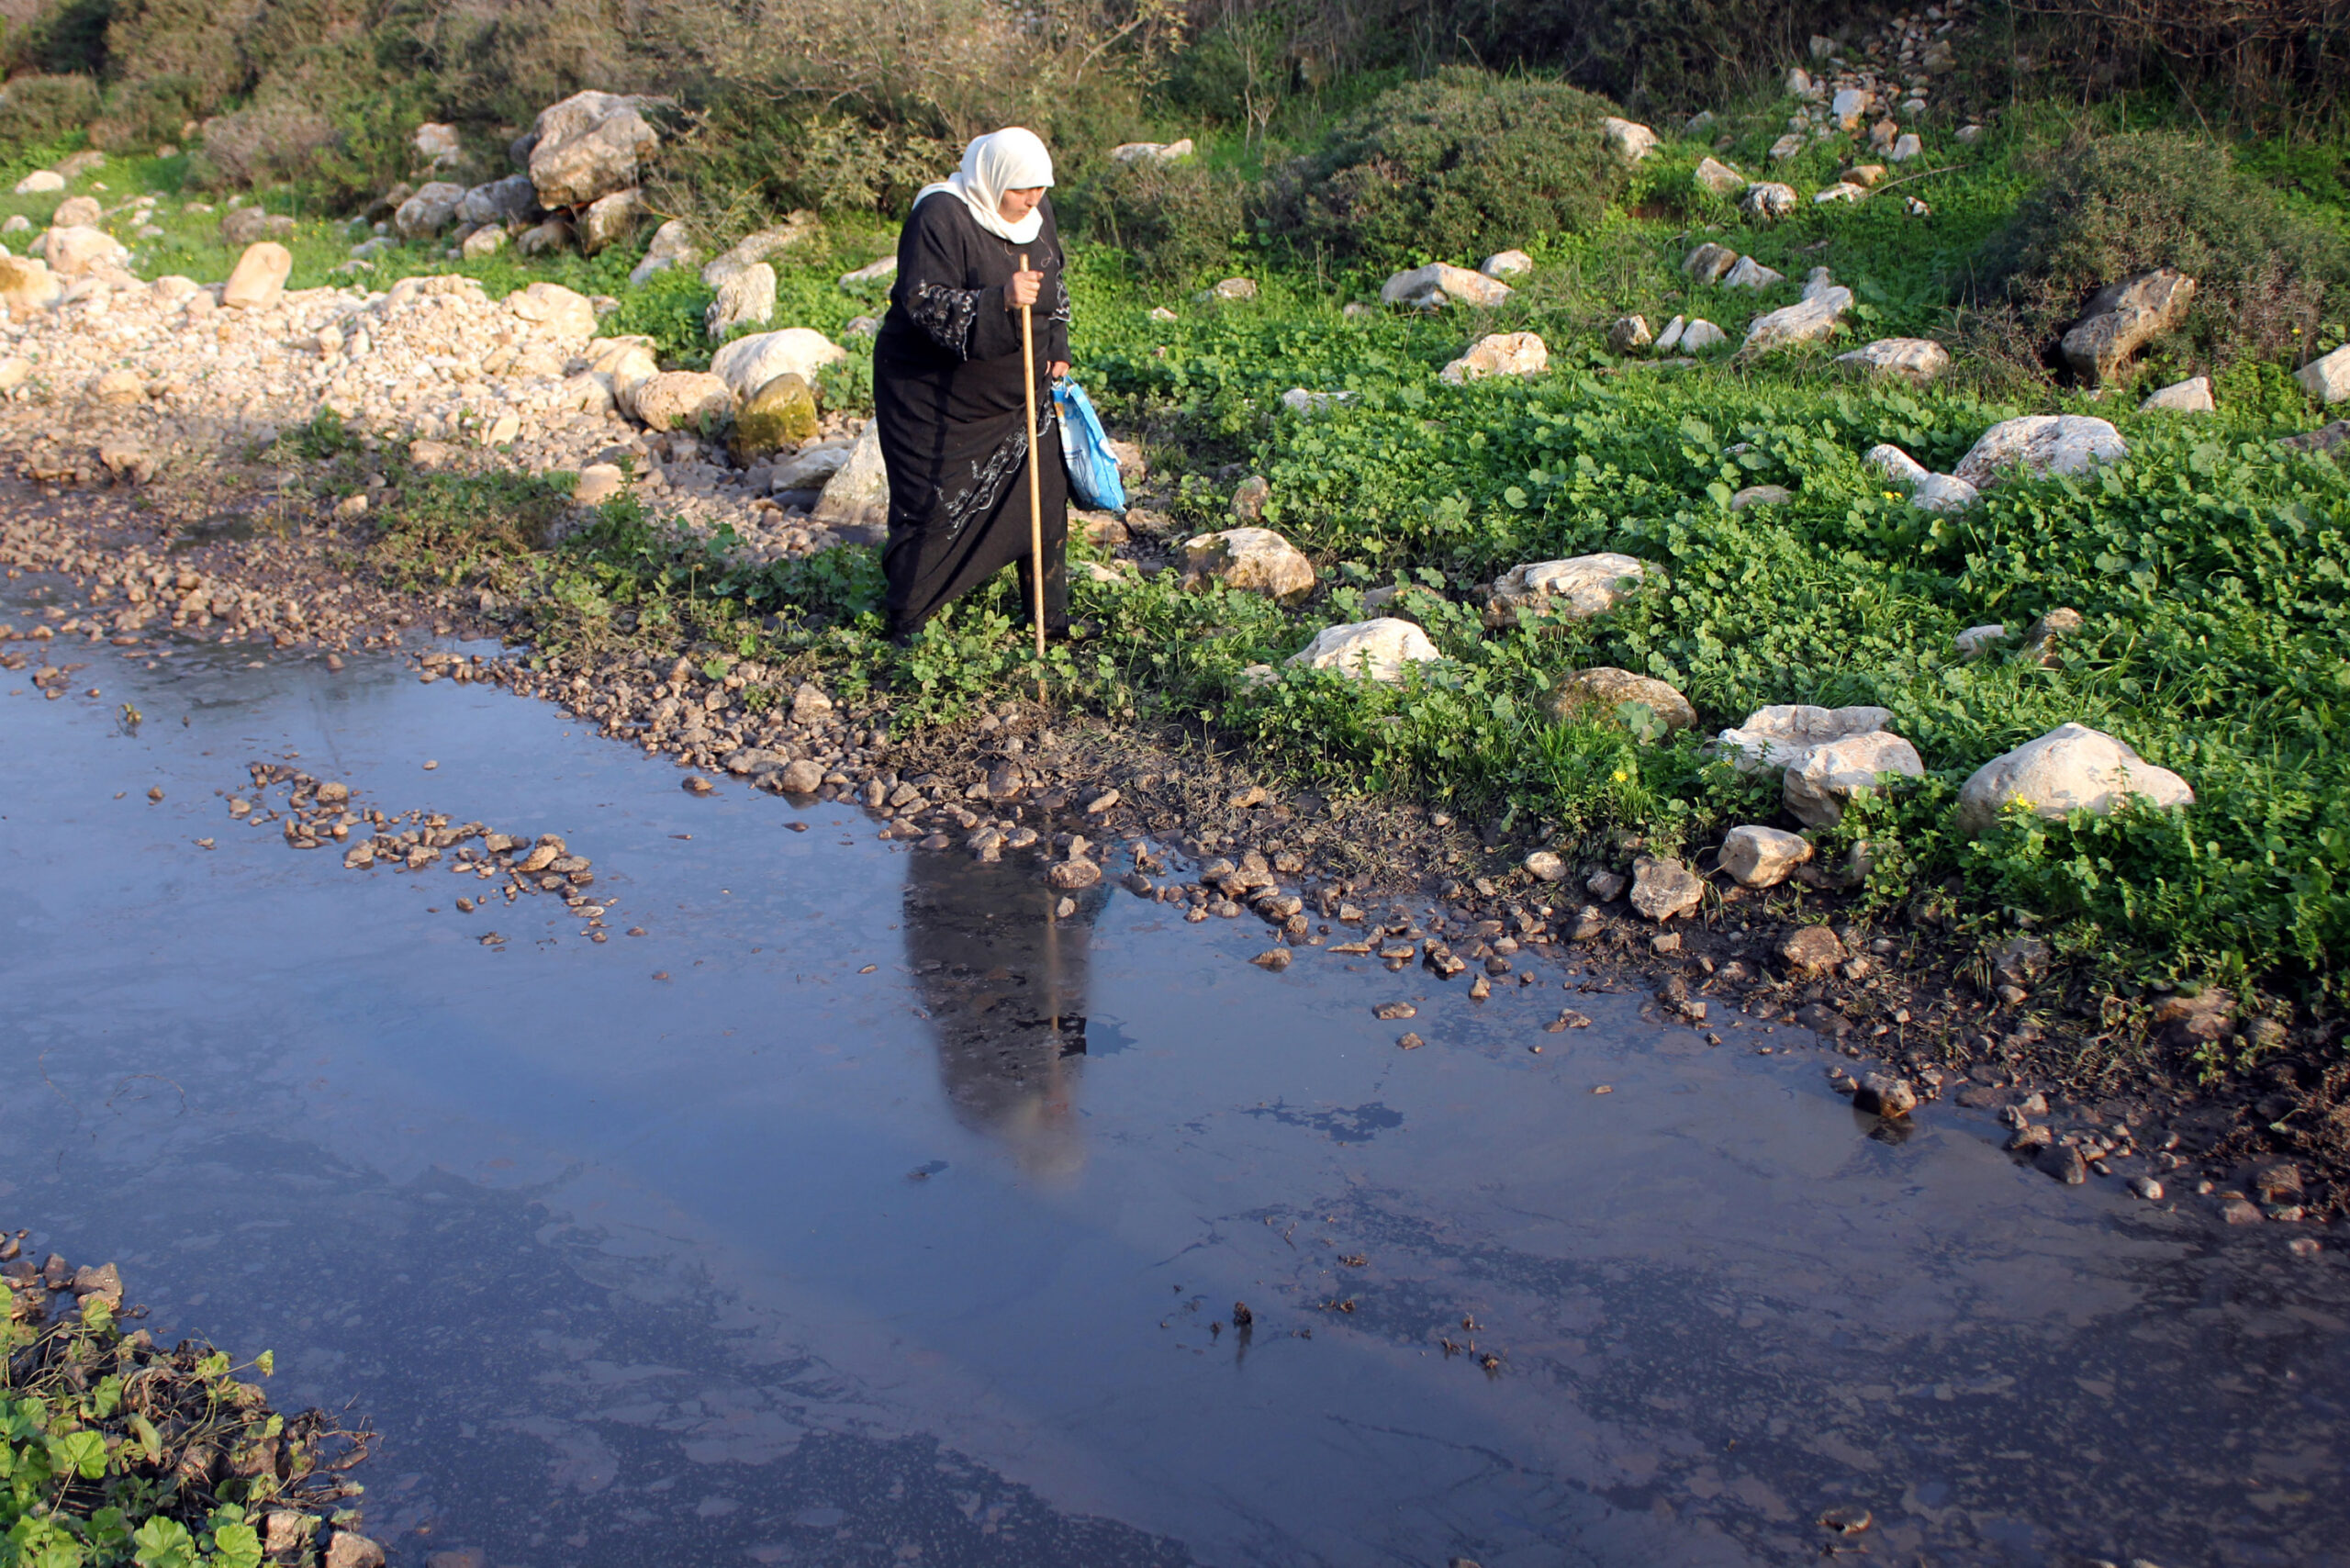 נחלים הפכו לצינורות ביוב. פלסטינית ליד ביוב הזורם בנחל ליד קלקיליה (צילום: אחמד אל-בז / אקטיבסטילס)